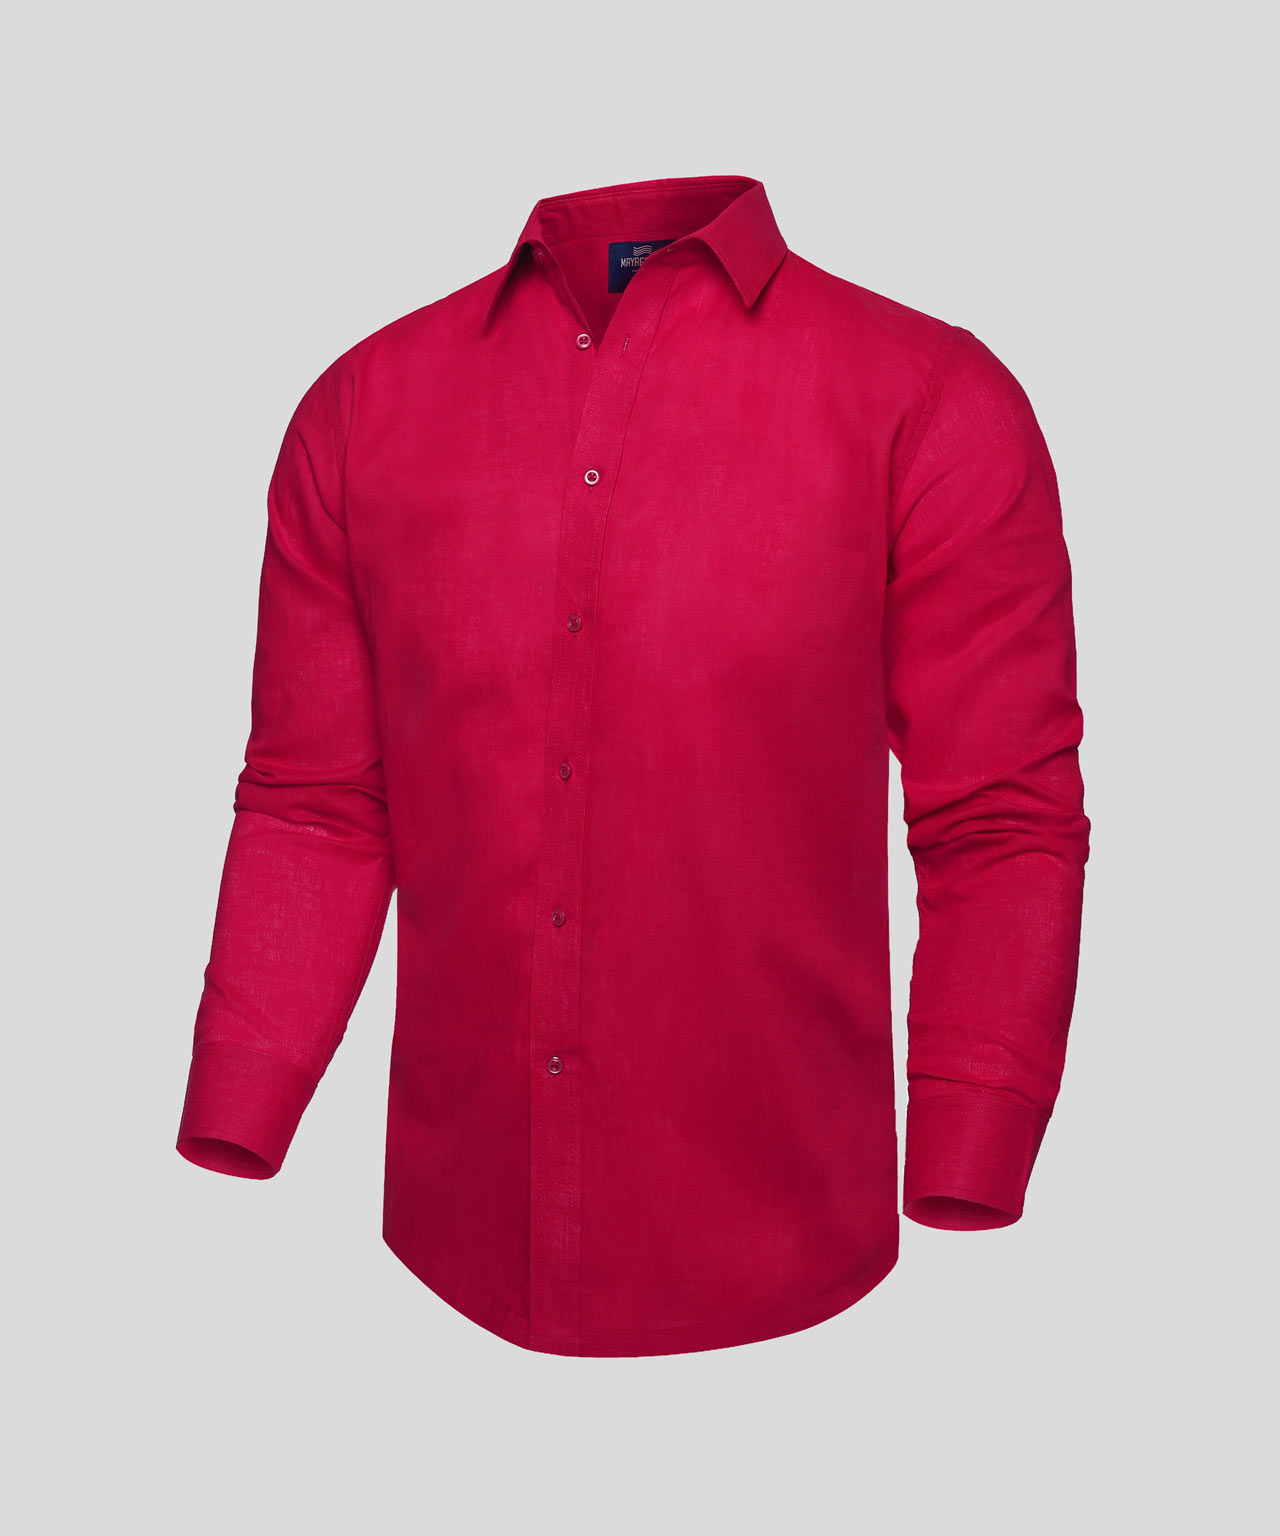 telar hierro Prisionero Camisa Roja Manga Larga – Mayaguana Swimwear